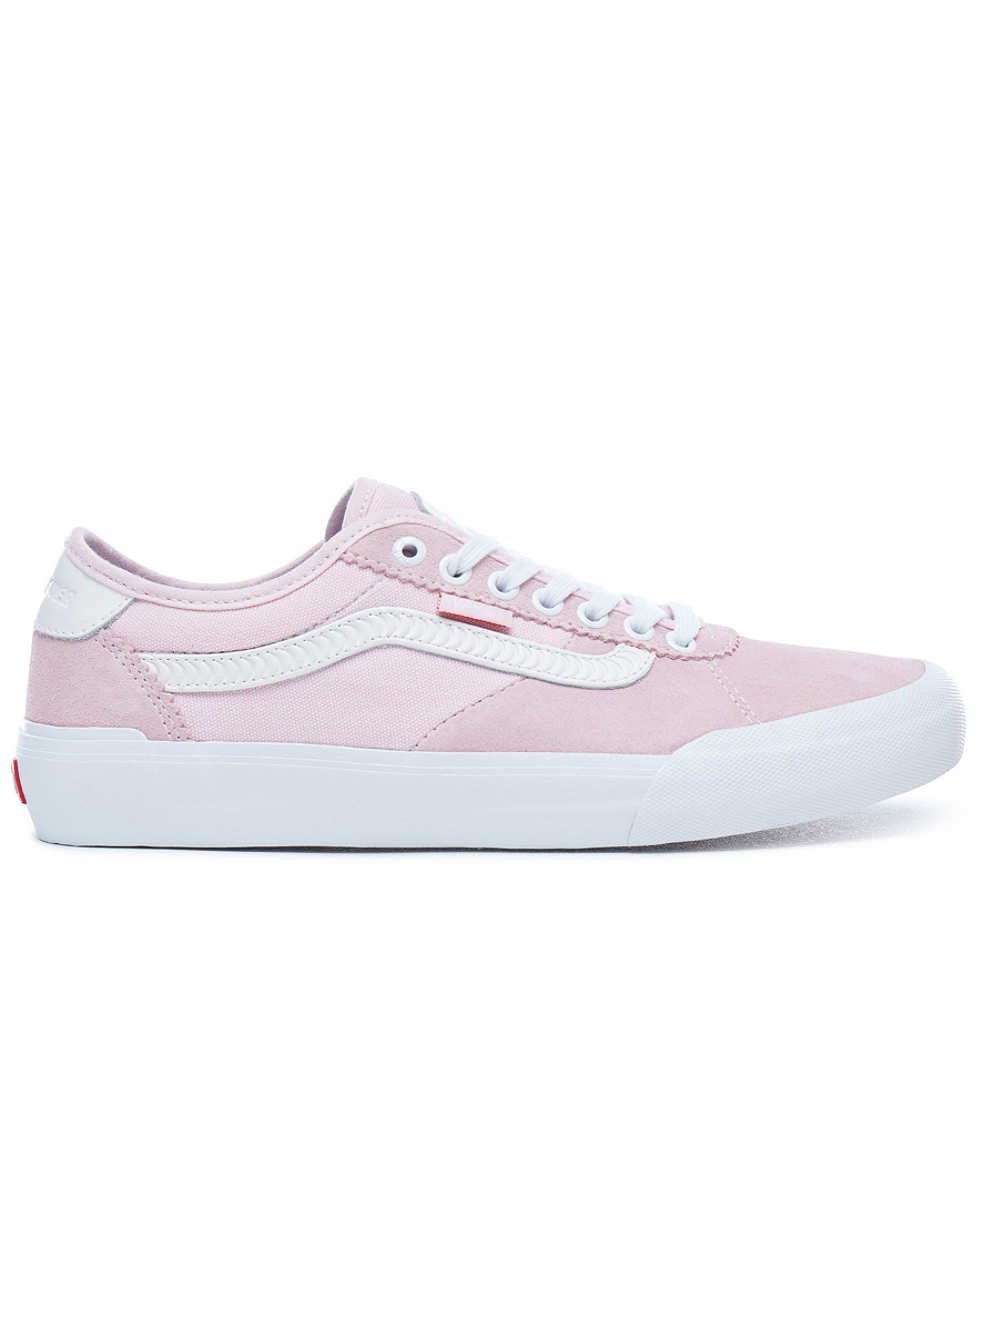 Vans Chima Pro 2 (Spitfire) - Pink | Rockcity | Skate Shoes, Vans Chima  Pro, Vans Pro Skate